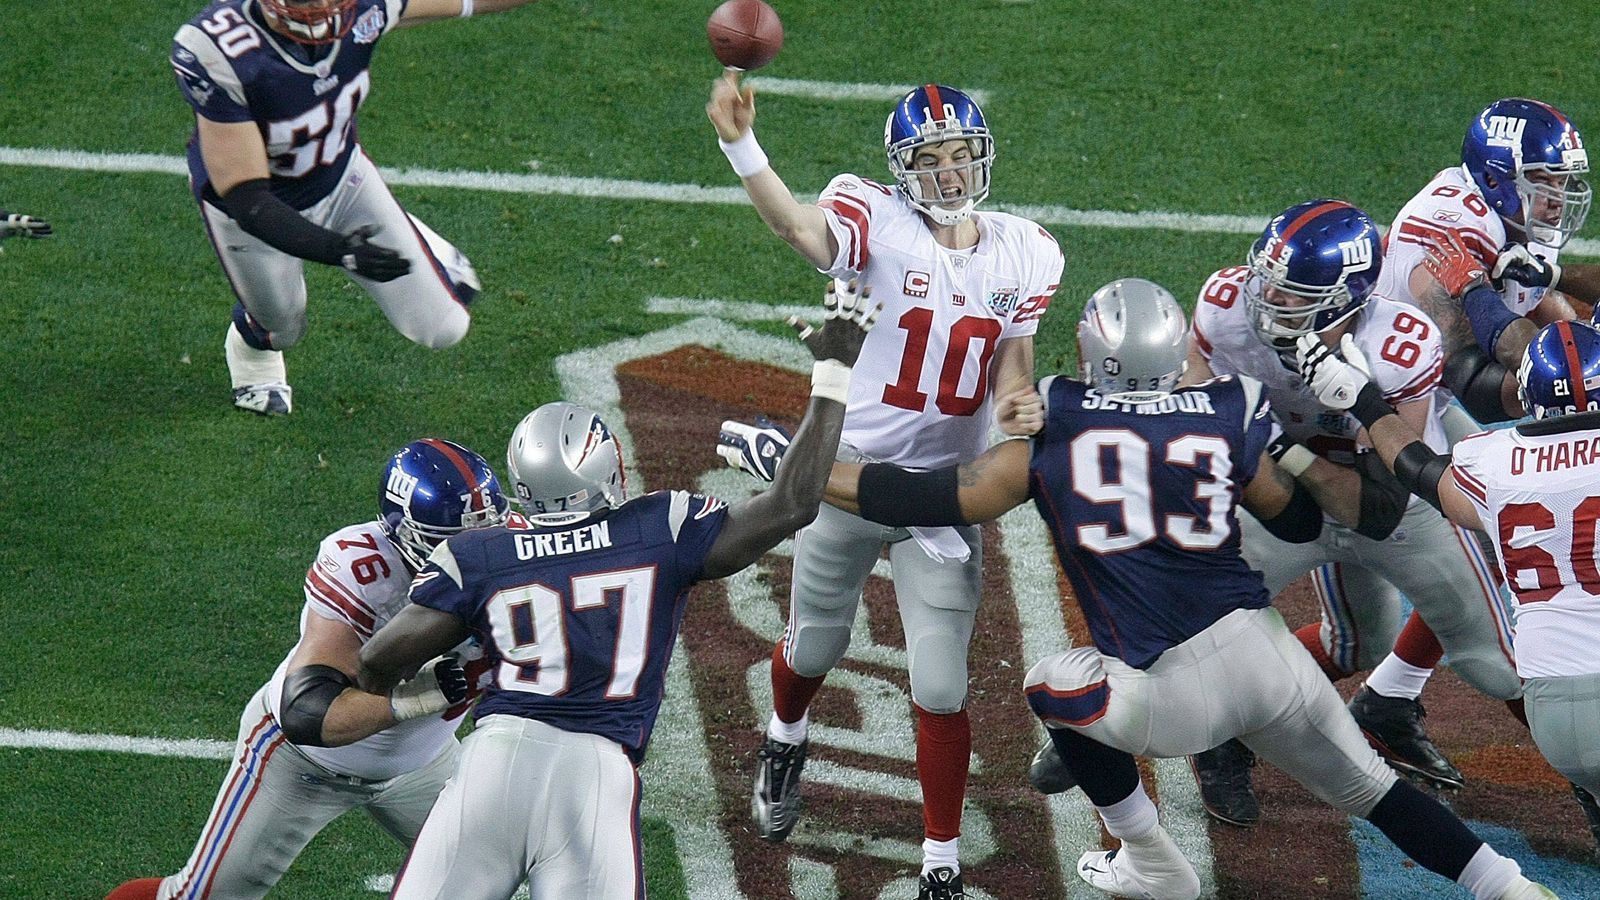 
                <strong>Eli, der Große</strong><br>
                An den Super Bowl XLII 3. Februar 2008 haben vor allem die New England Patriots schlechte Erinnerungen. Nach einer perfekten Saison verloren sie gegen die New York Giants 14:17. Eli Manning wurde Super Bowl MVP. Ja, die guten alten Zeiten.
              